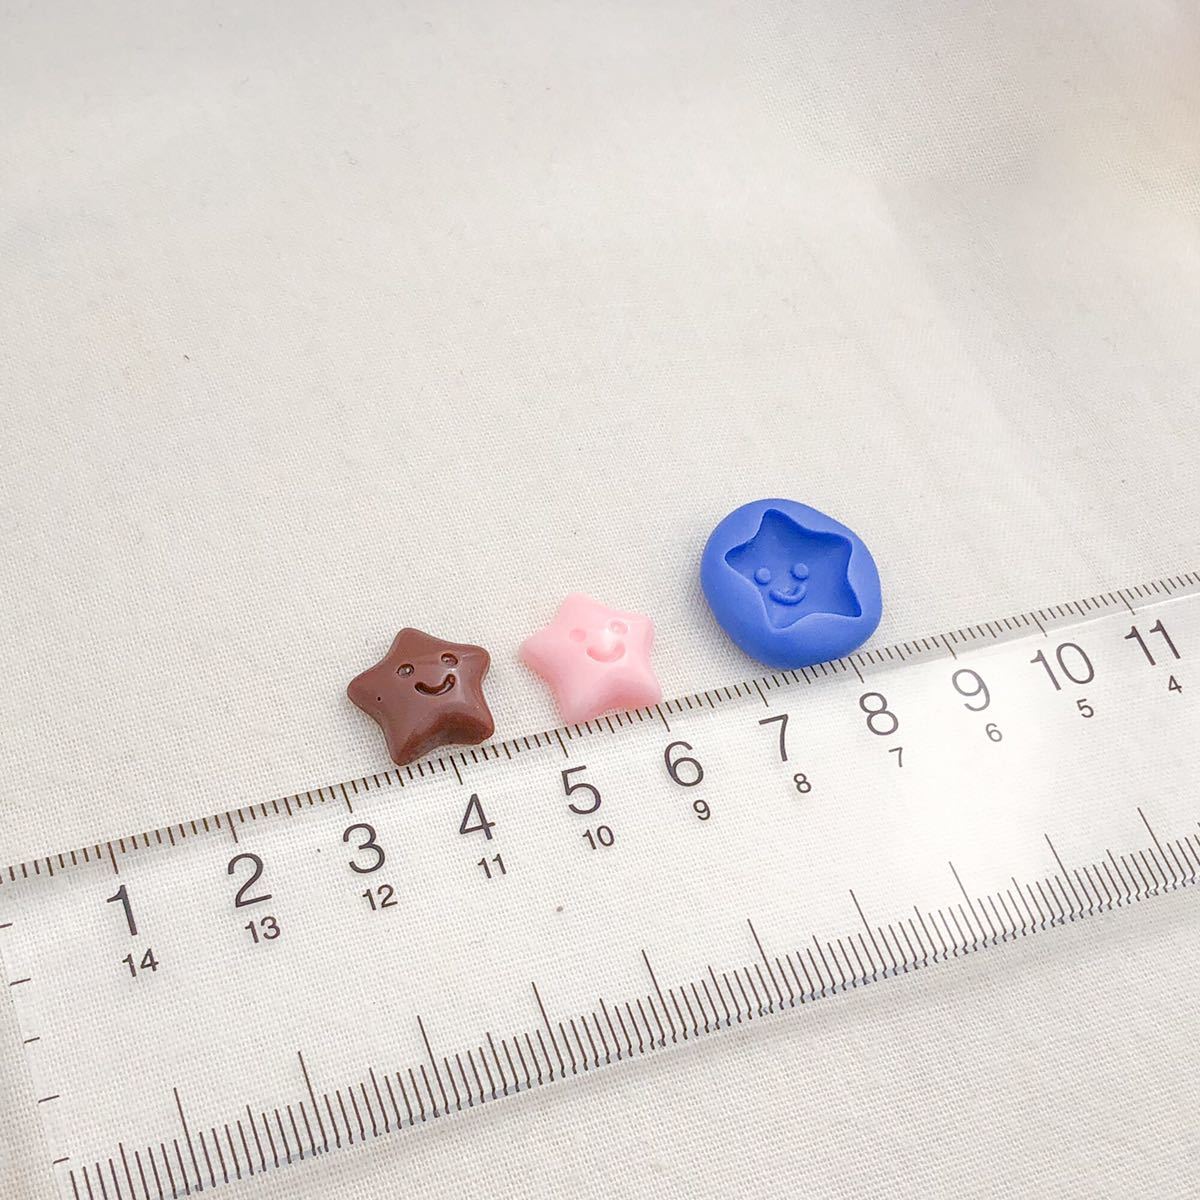 185 星 ニコちゃん型 デコ パーツ 樹脂粘土 チョコレート モールド ブルーミックス シリコン ハンドメイド スター キャンディ ネイル_画像4